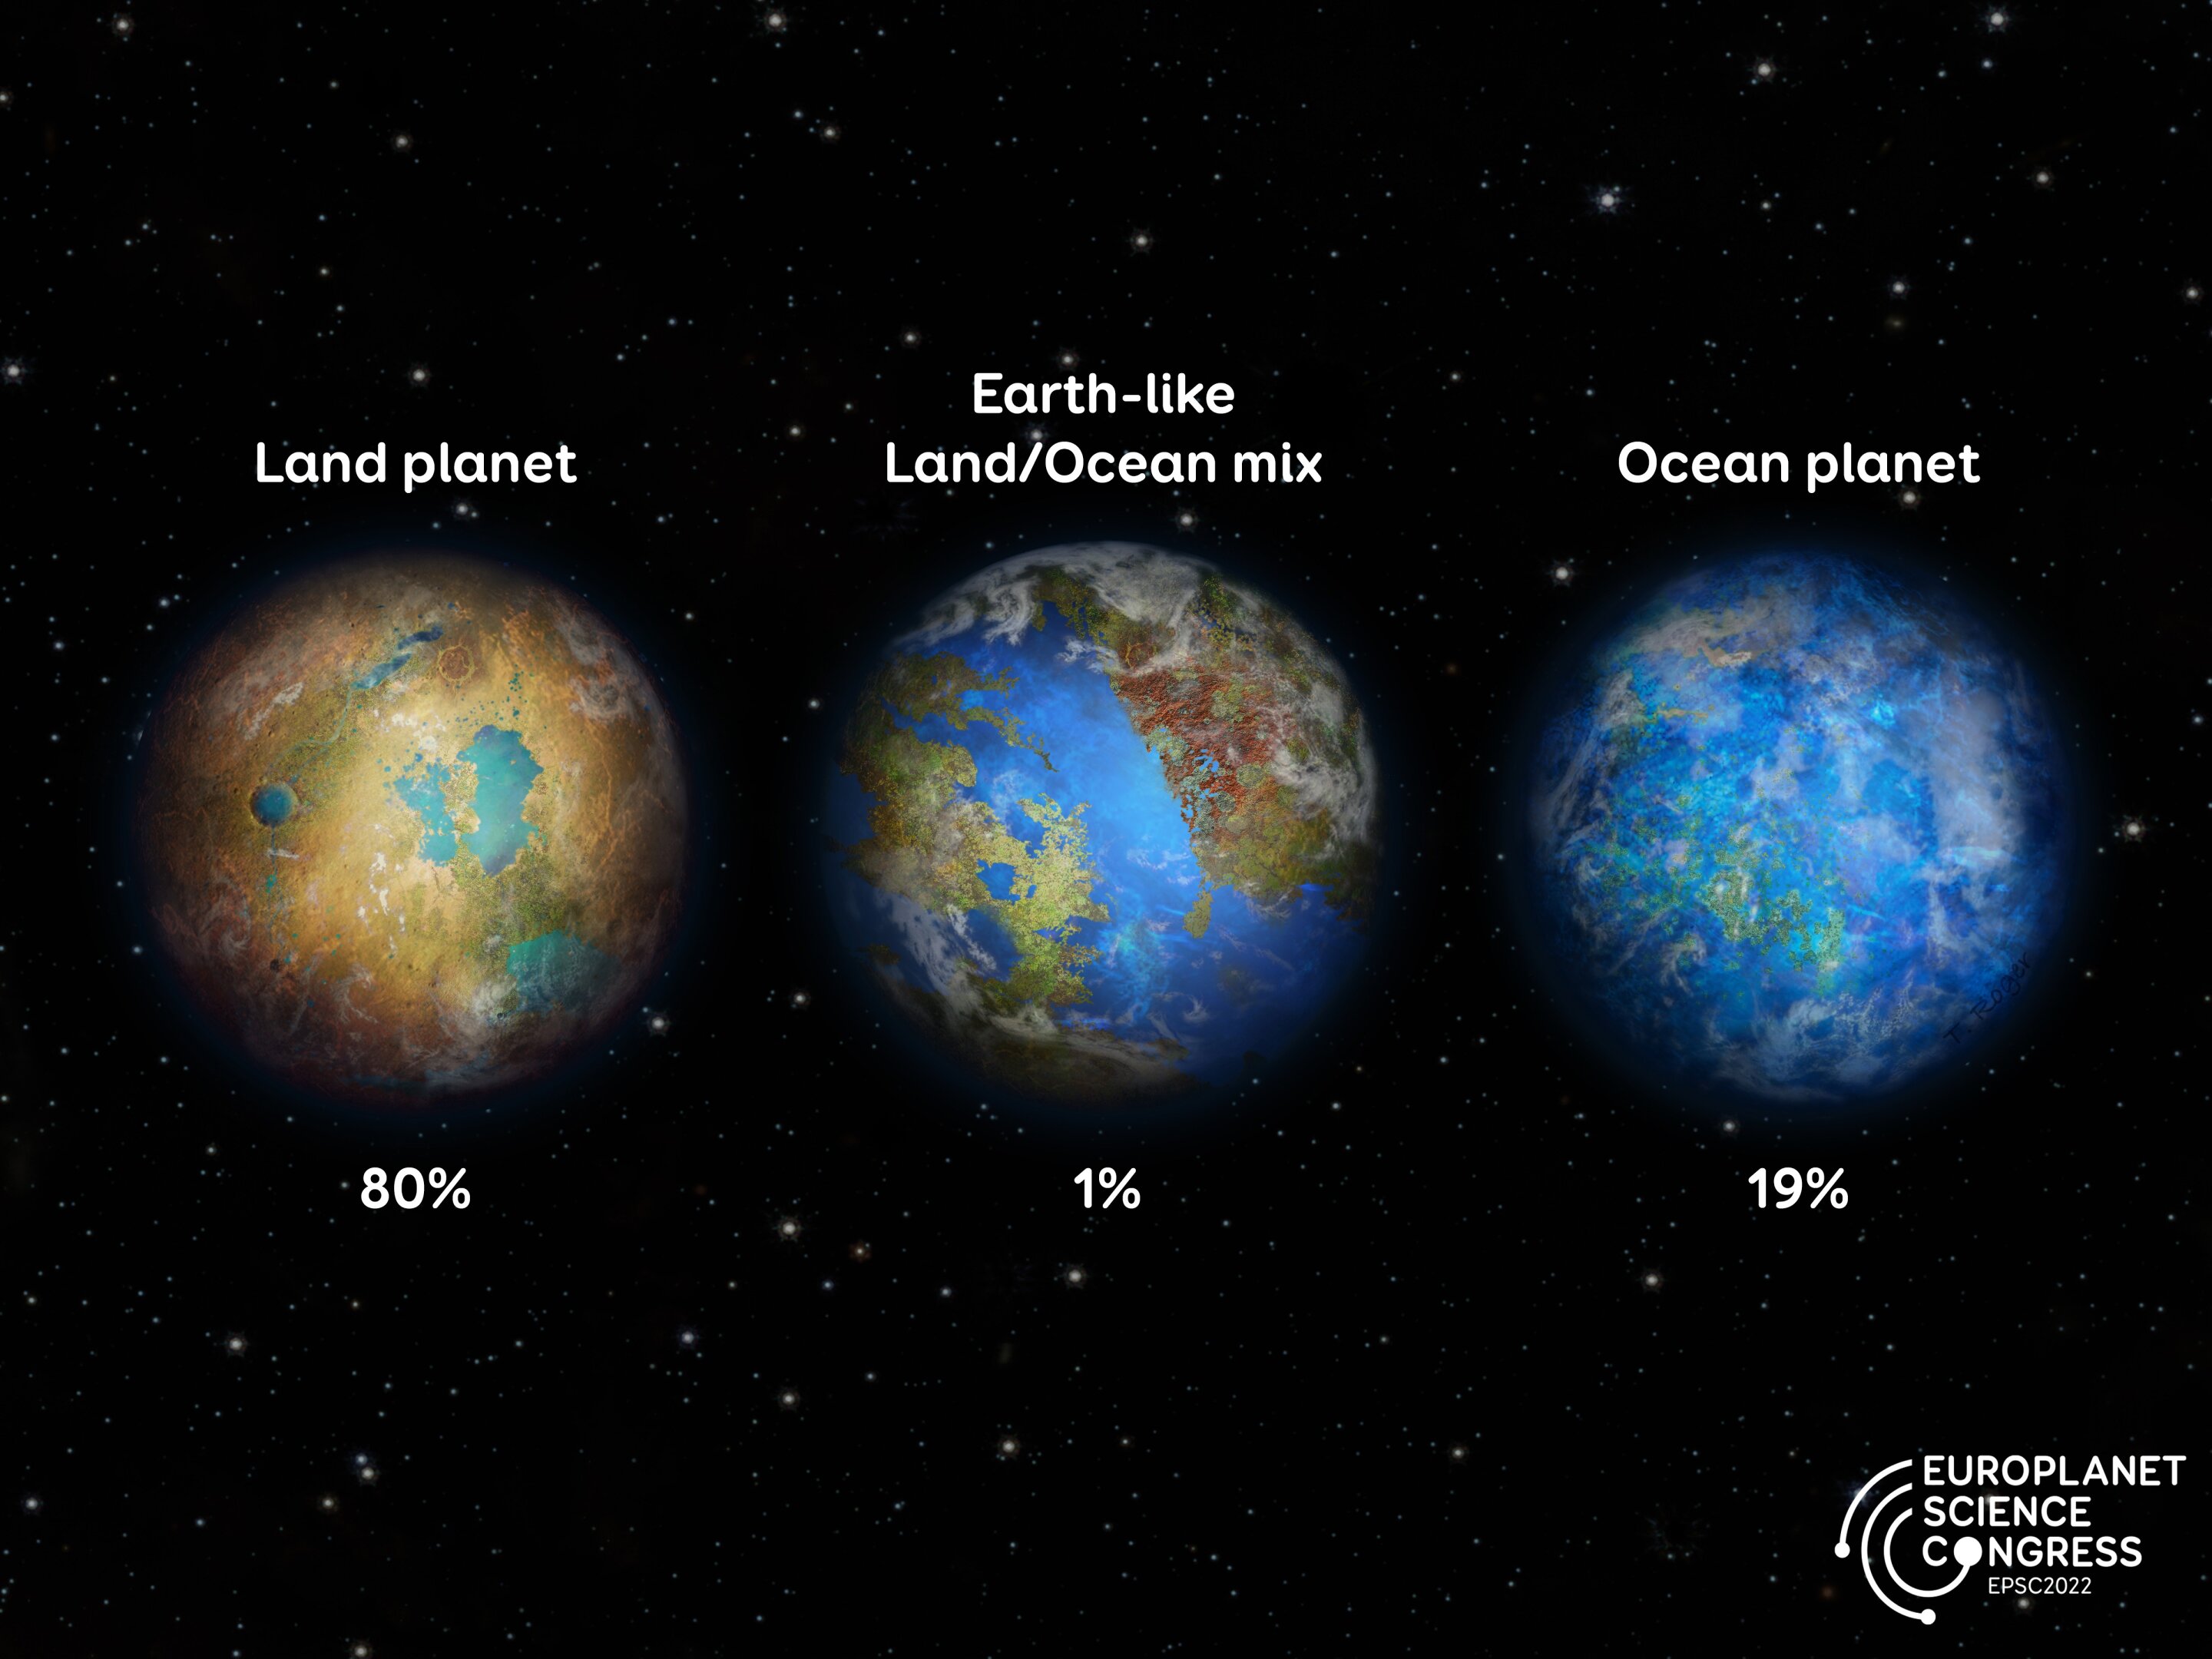 Andere erdähnliche Exoplaneten sind wahrscheinlich kein weiterer „blassblauer Punkt“